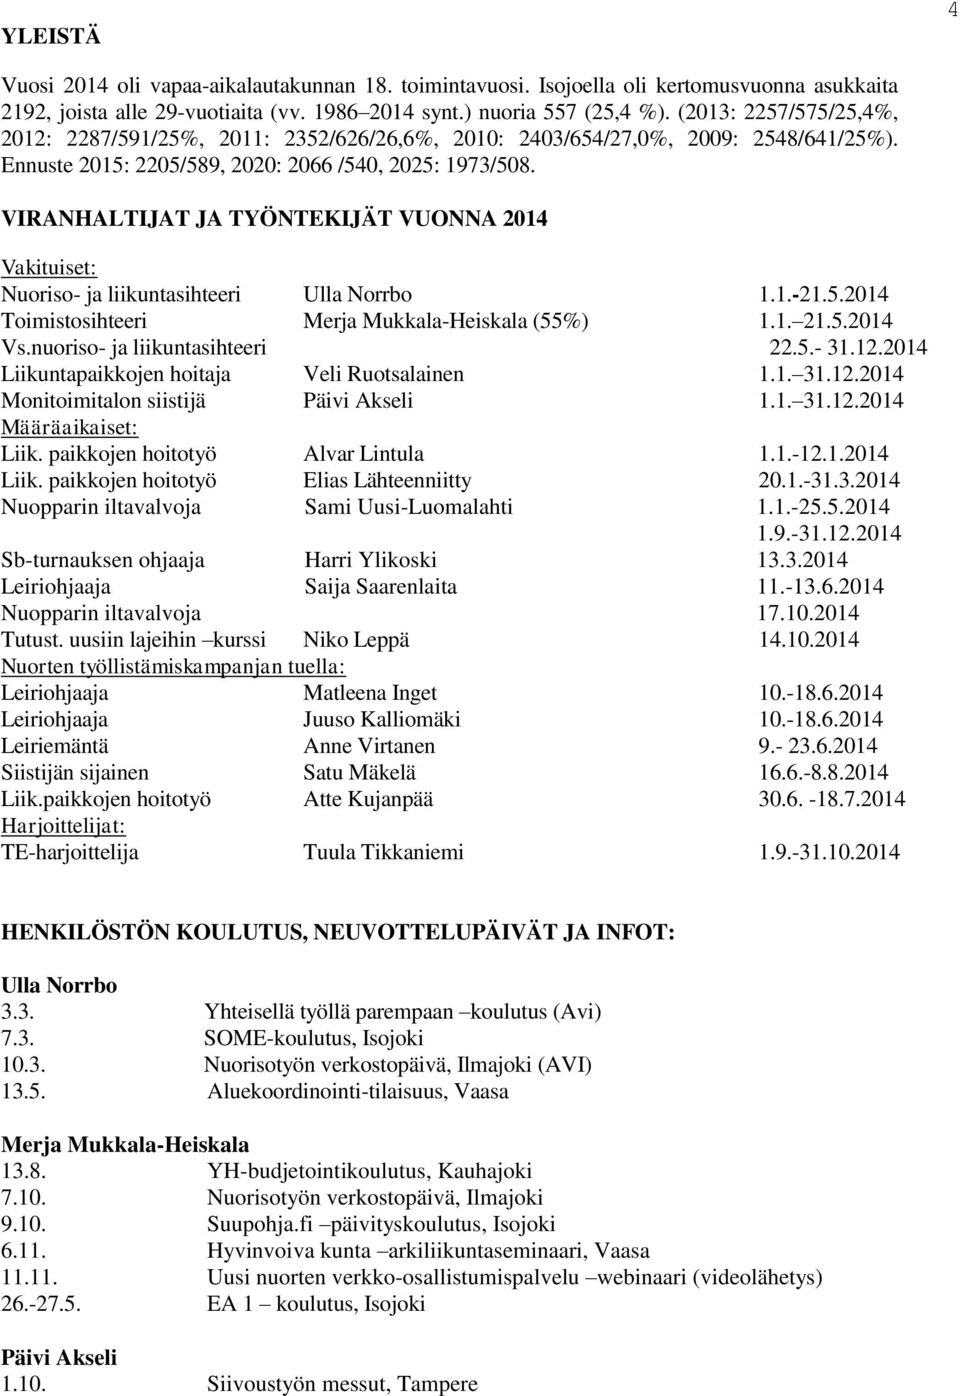 VIRANHALTIJAT JA TYÖNTEKIJÄT VUONNA 2014 Vakituiset: Nuoriso- ja liikuntasihteeri Ulla Norrbo 1.1.-21.5.2014 Toimistosihteeri Merja Mukkala-Heiskala (55%) 1.1. 21.5.2014 Vs.